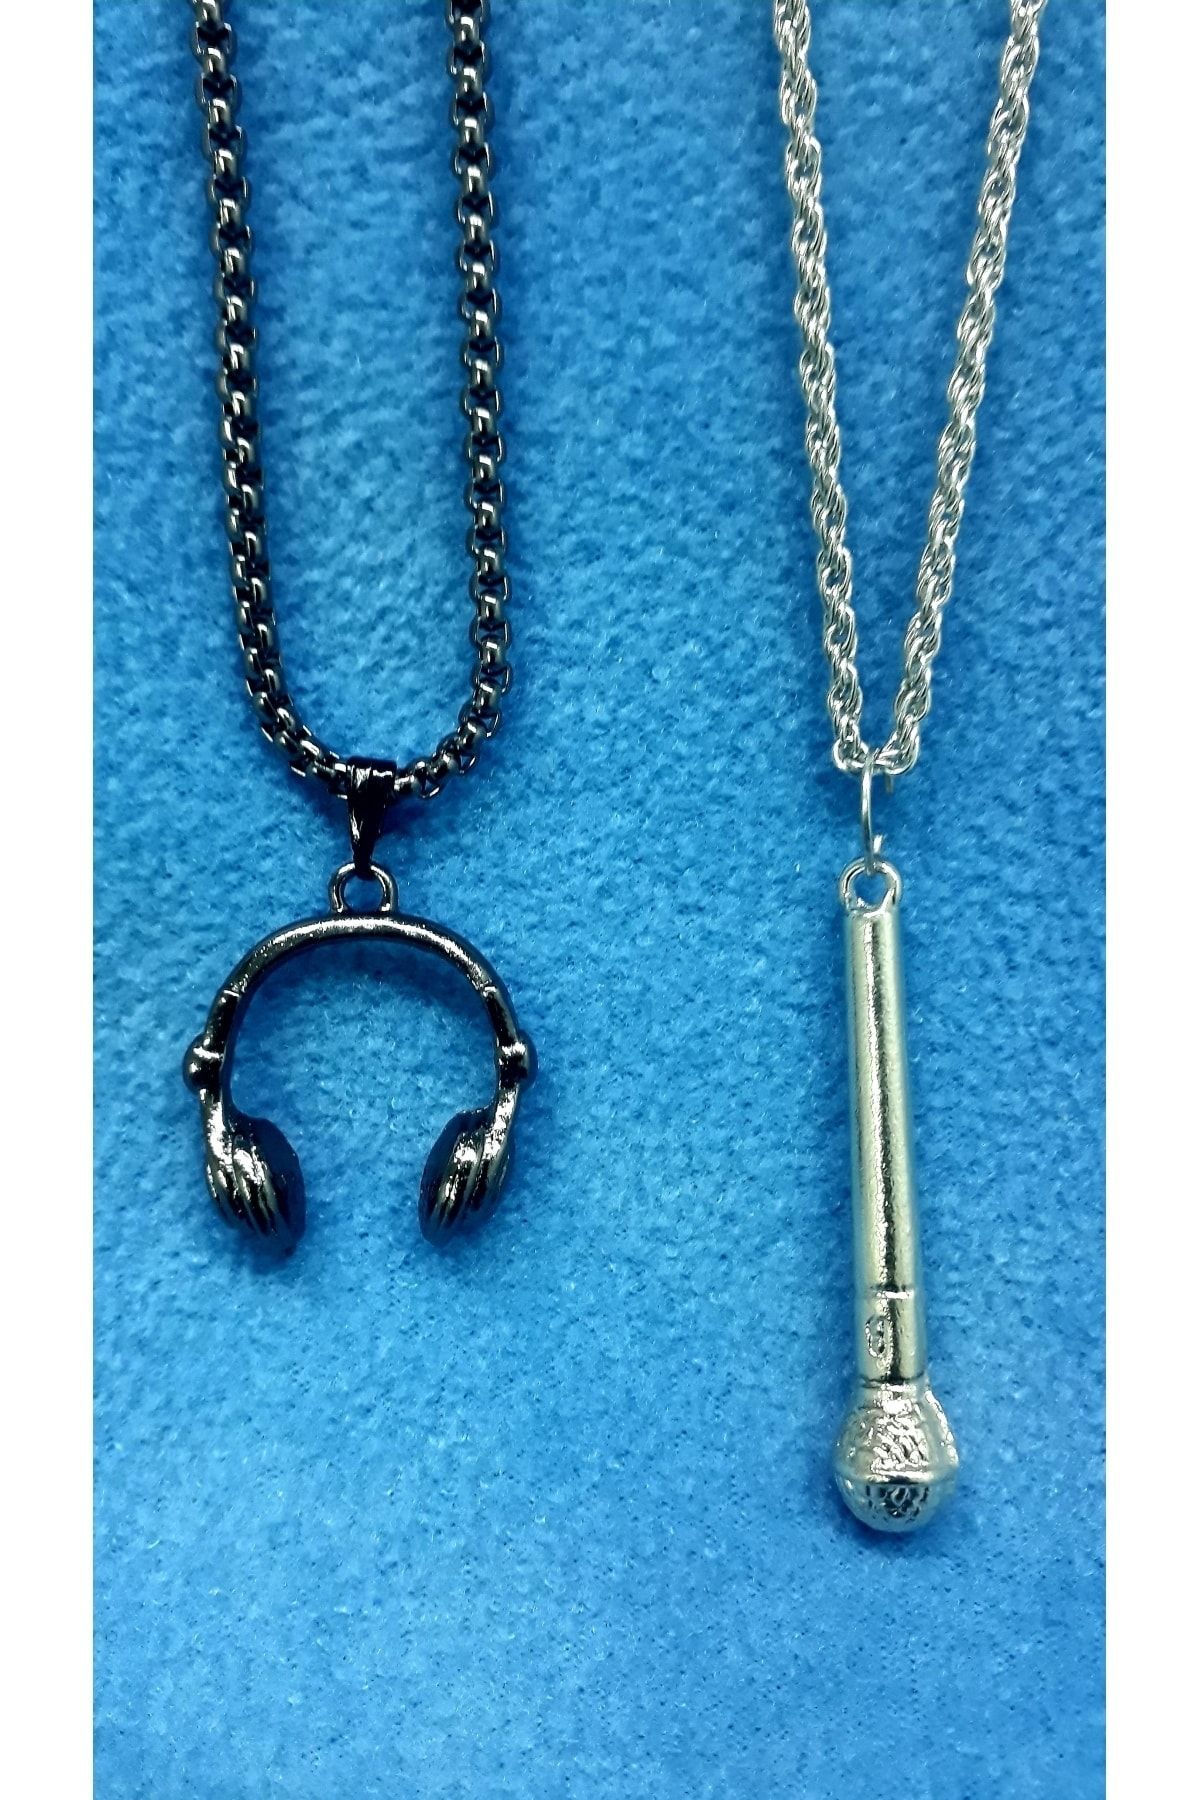 whocares Unisex Kolye Zincirli Füme-gümüş Renk Çift Kulaklık - Mikrofon Sembollü (2 Adet)